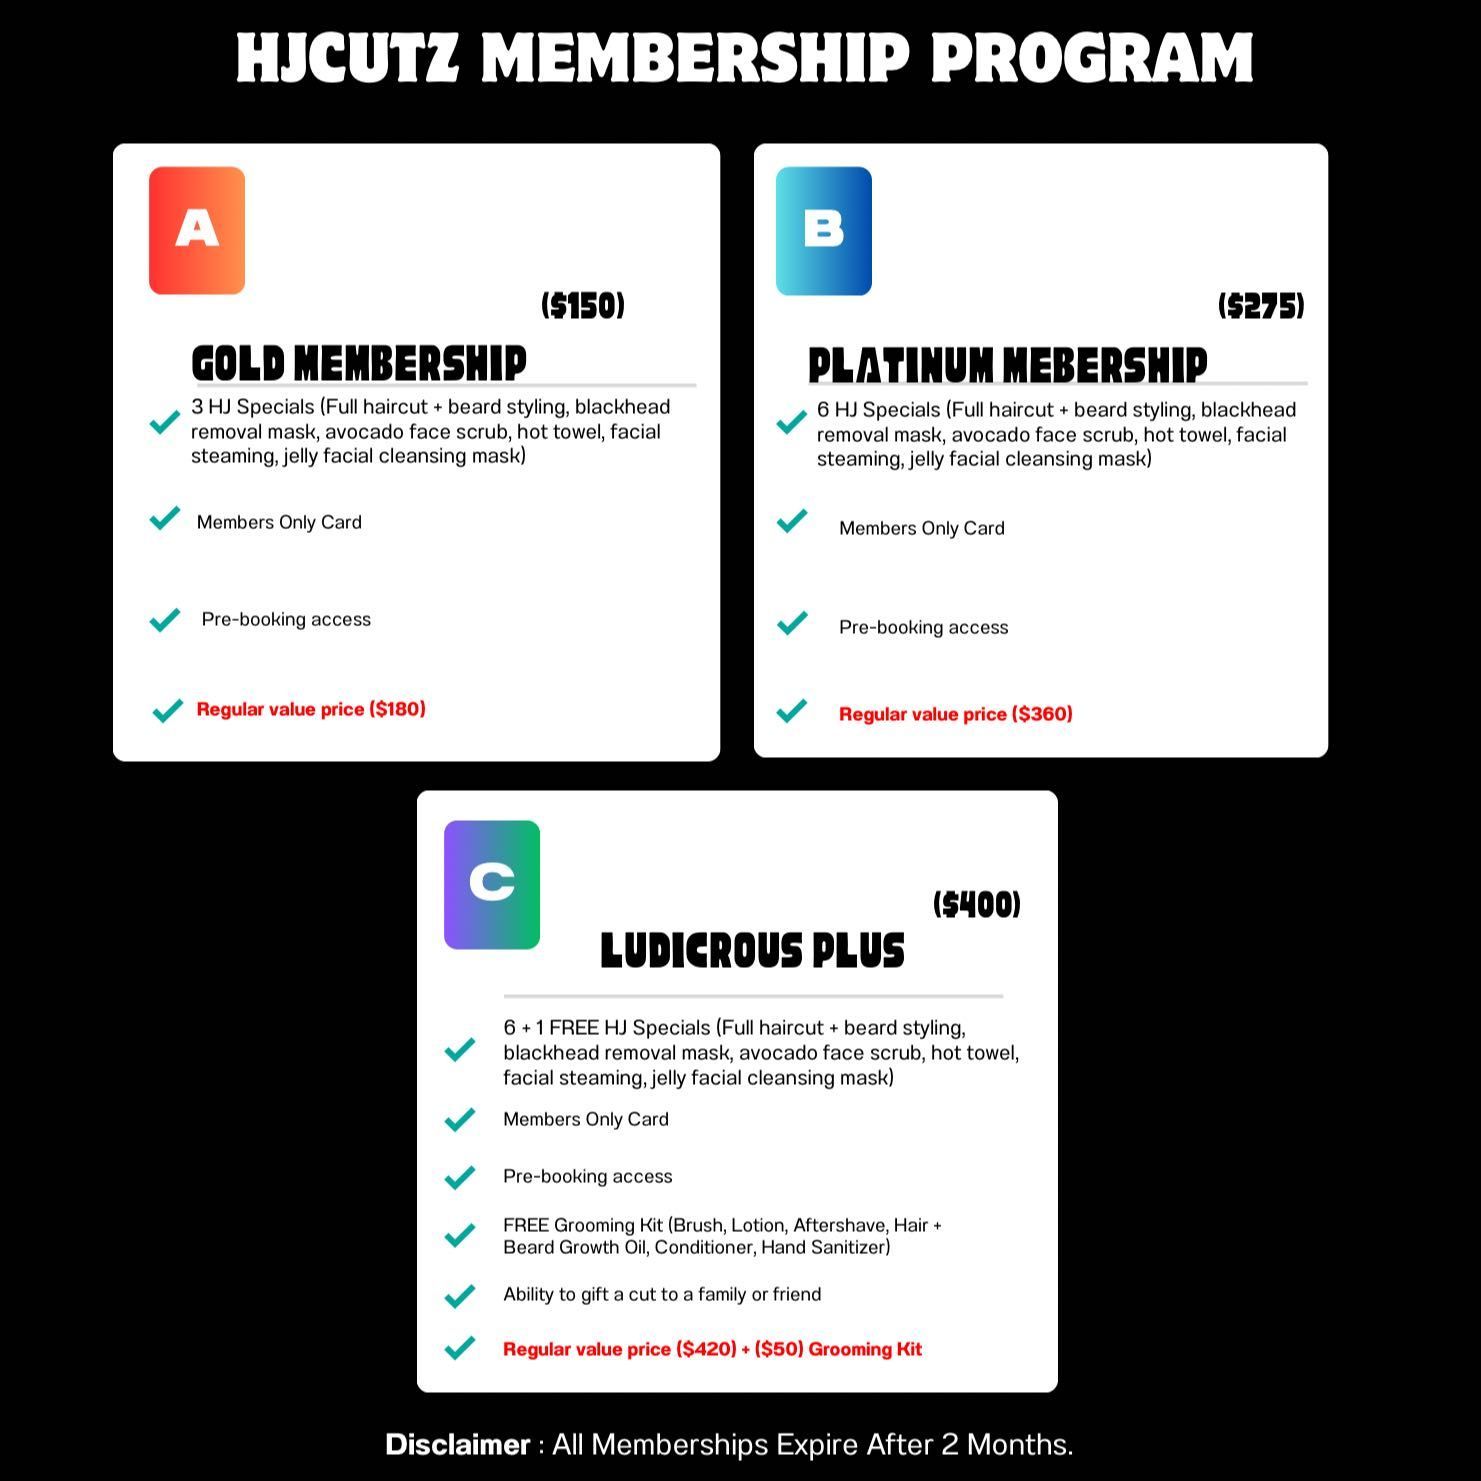 HJcutz Membership Program portfolio